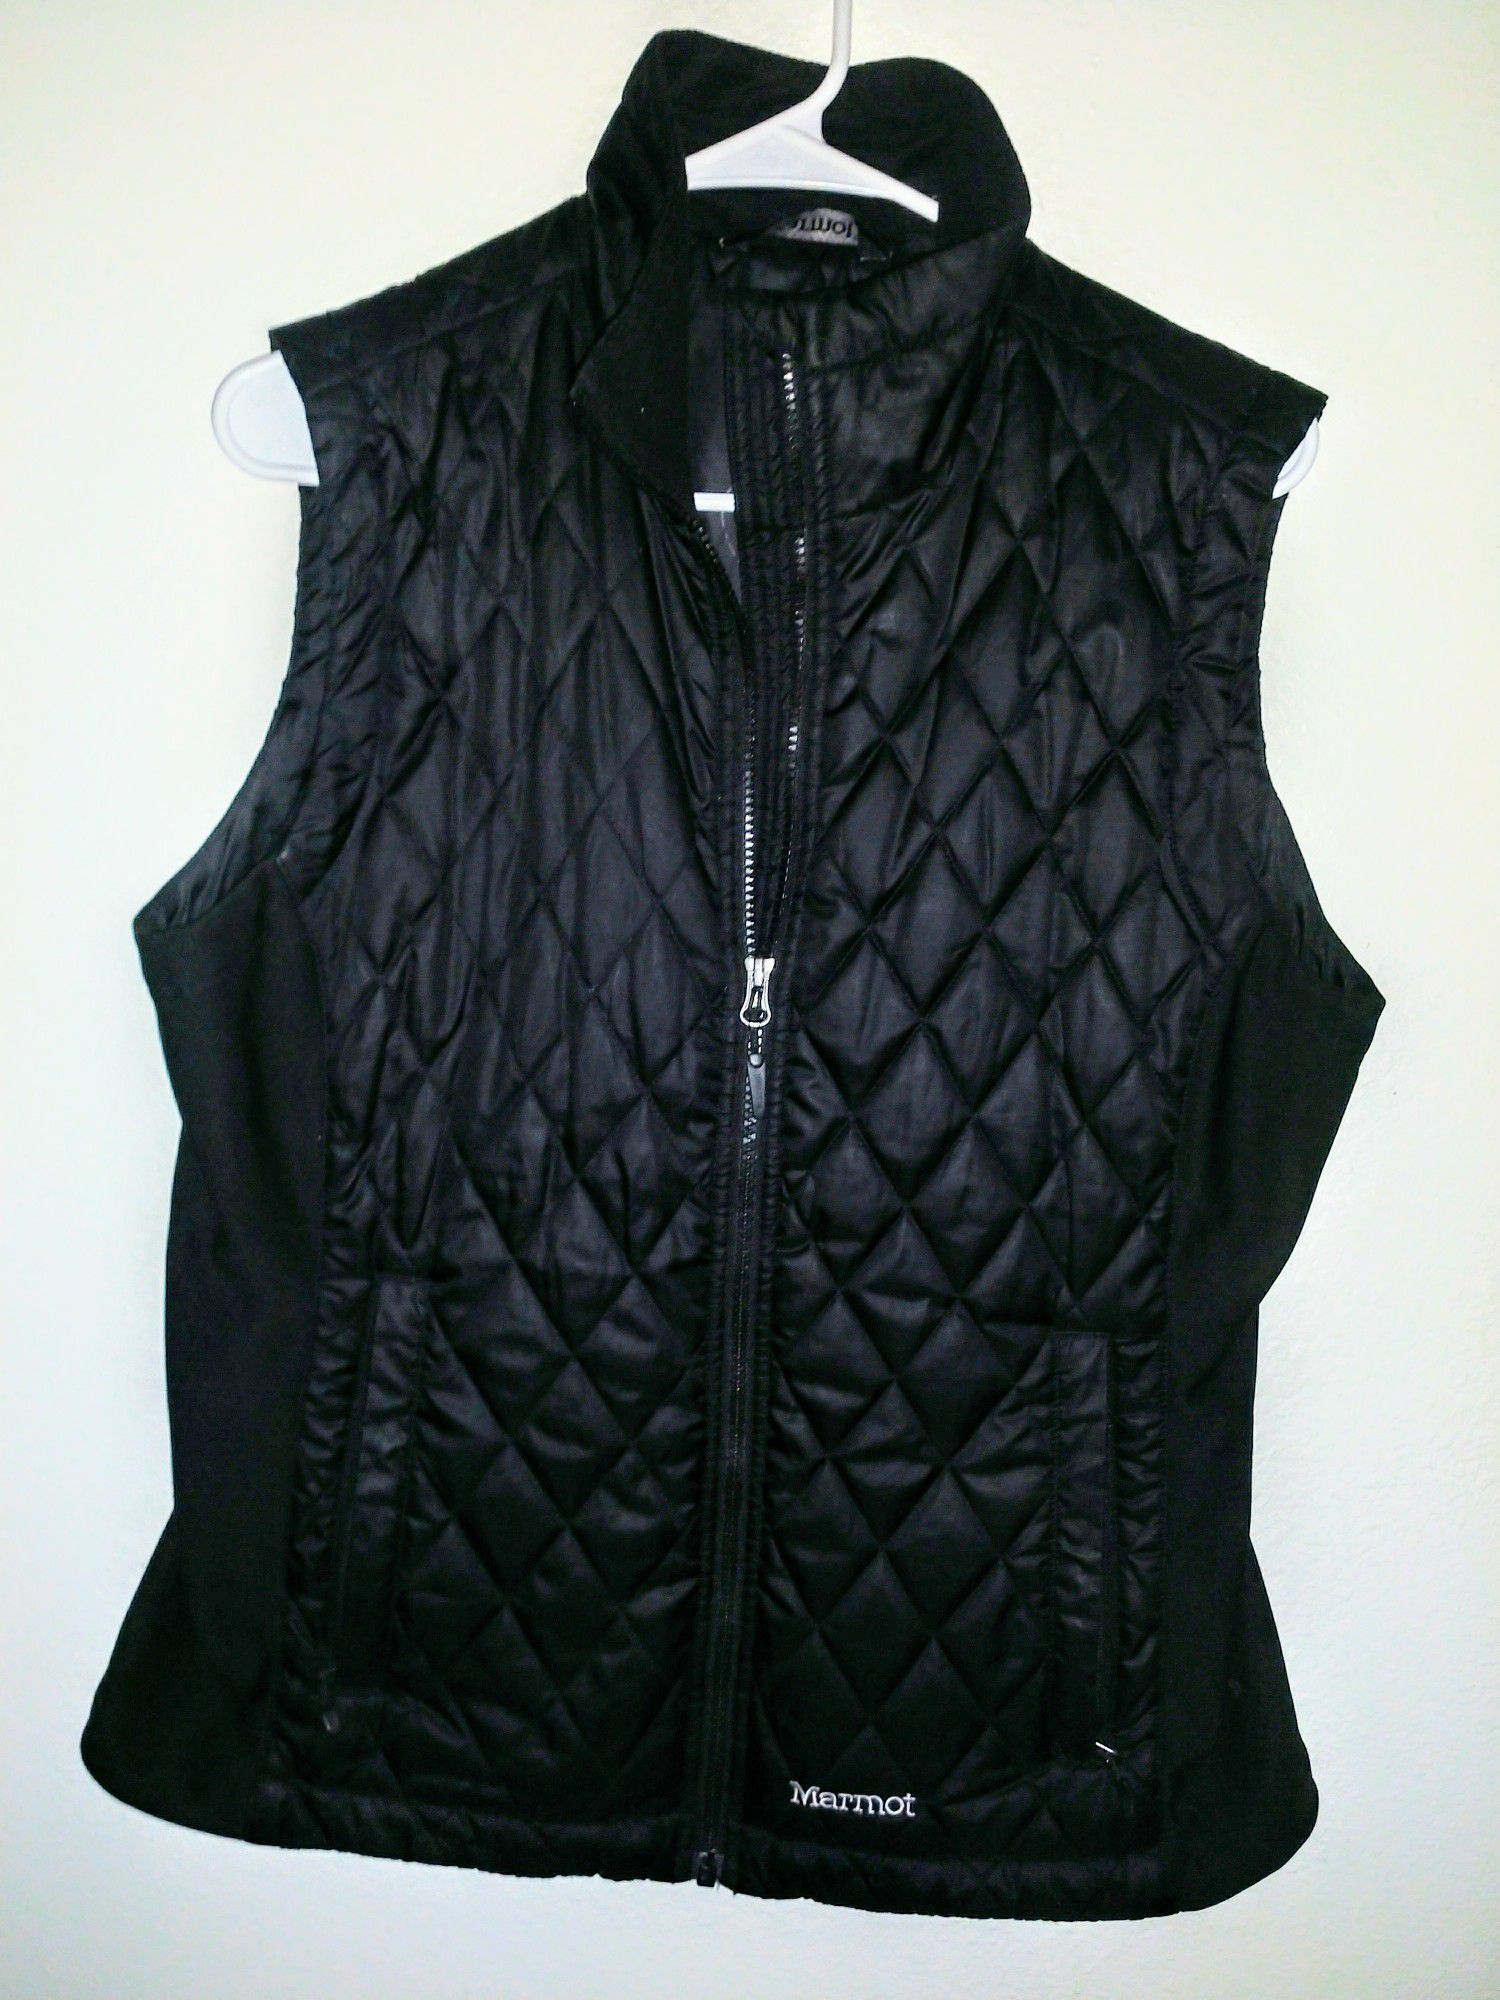 Women's Marmot Black Vest size Large